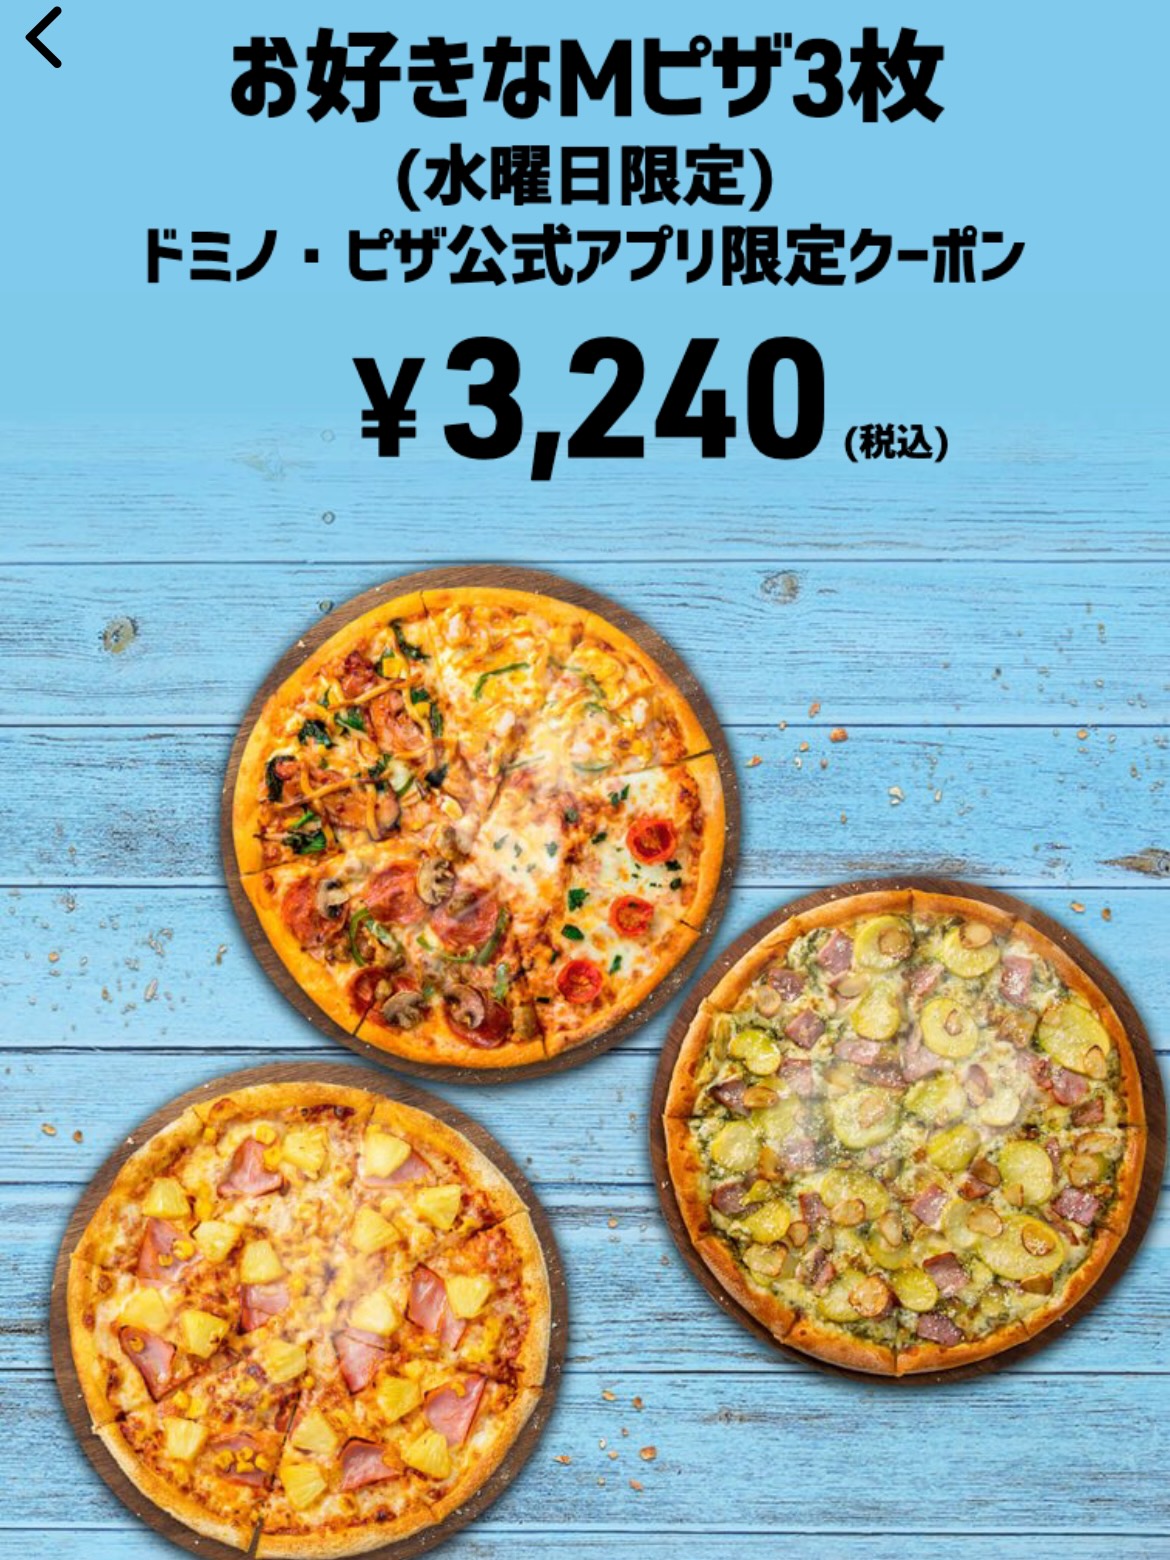 お好きなMピザ3枚 ドミノ・ピザ公式アプリ限定クーポン